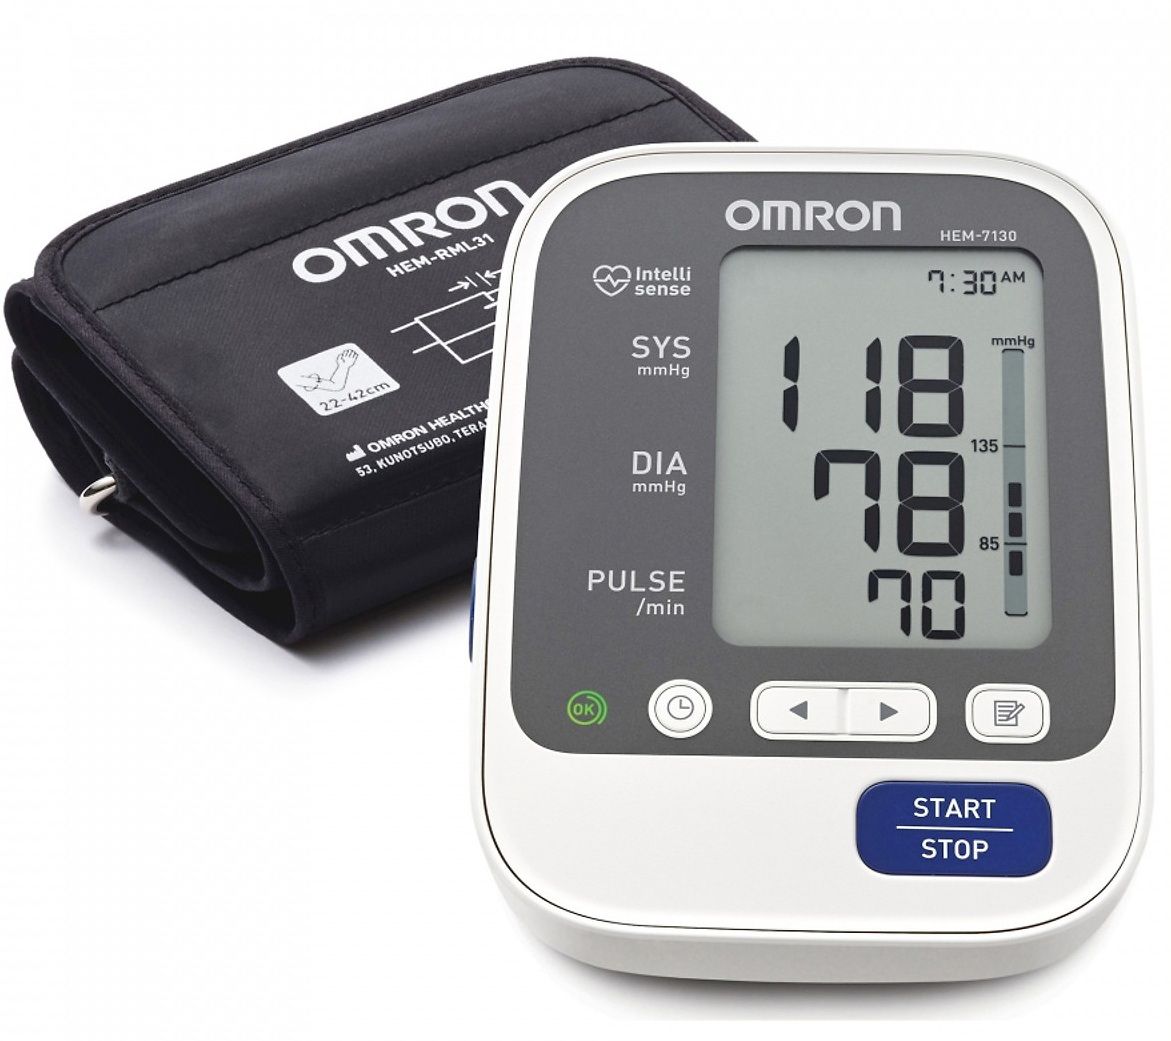 Máy đo huyết áp bắp tay Omron Hem 7130 công nghệ Intellisense tự động 1